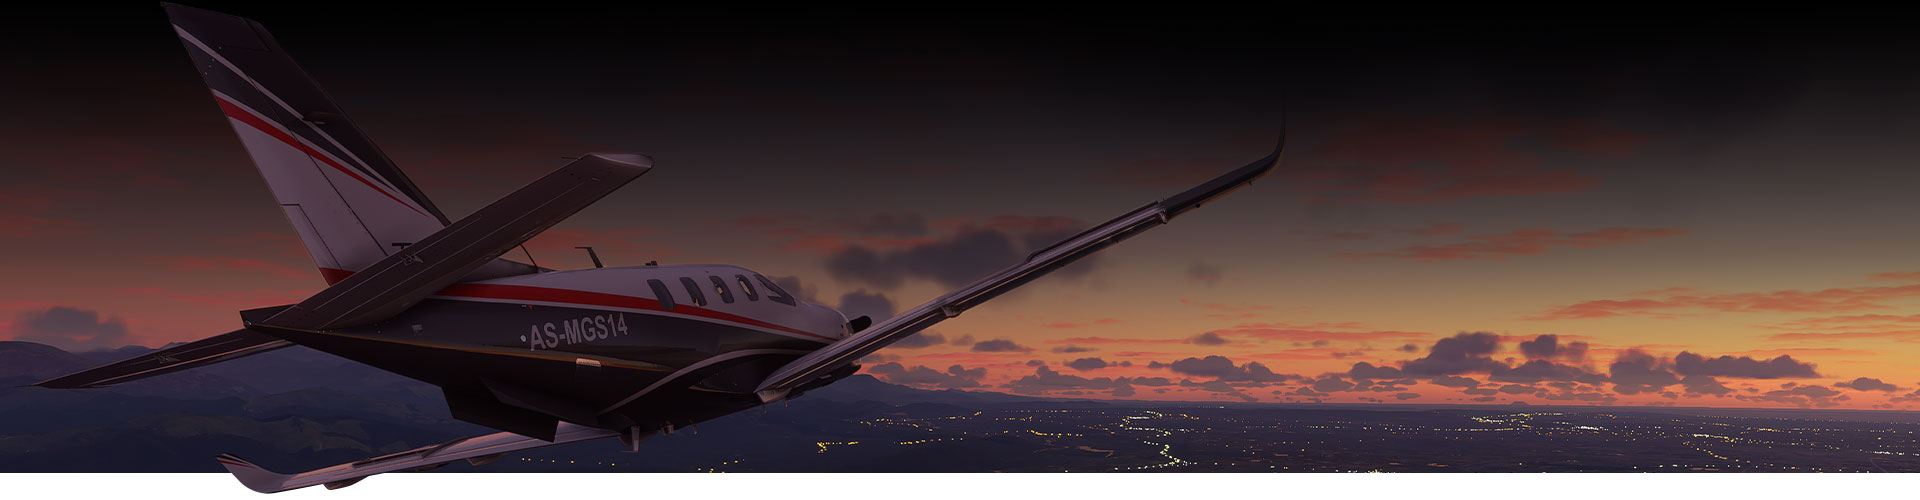 Lietadlo z hry Microsoft Flight Simulator lietajúce nad mestom pri západe slnka